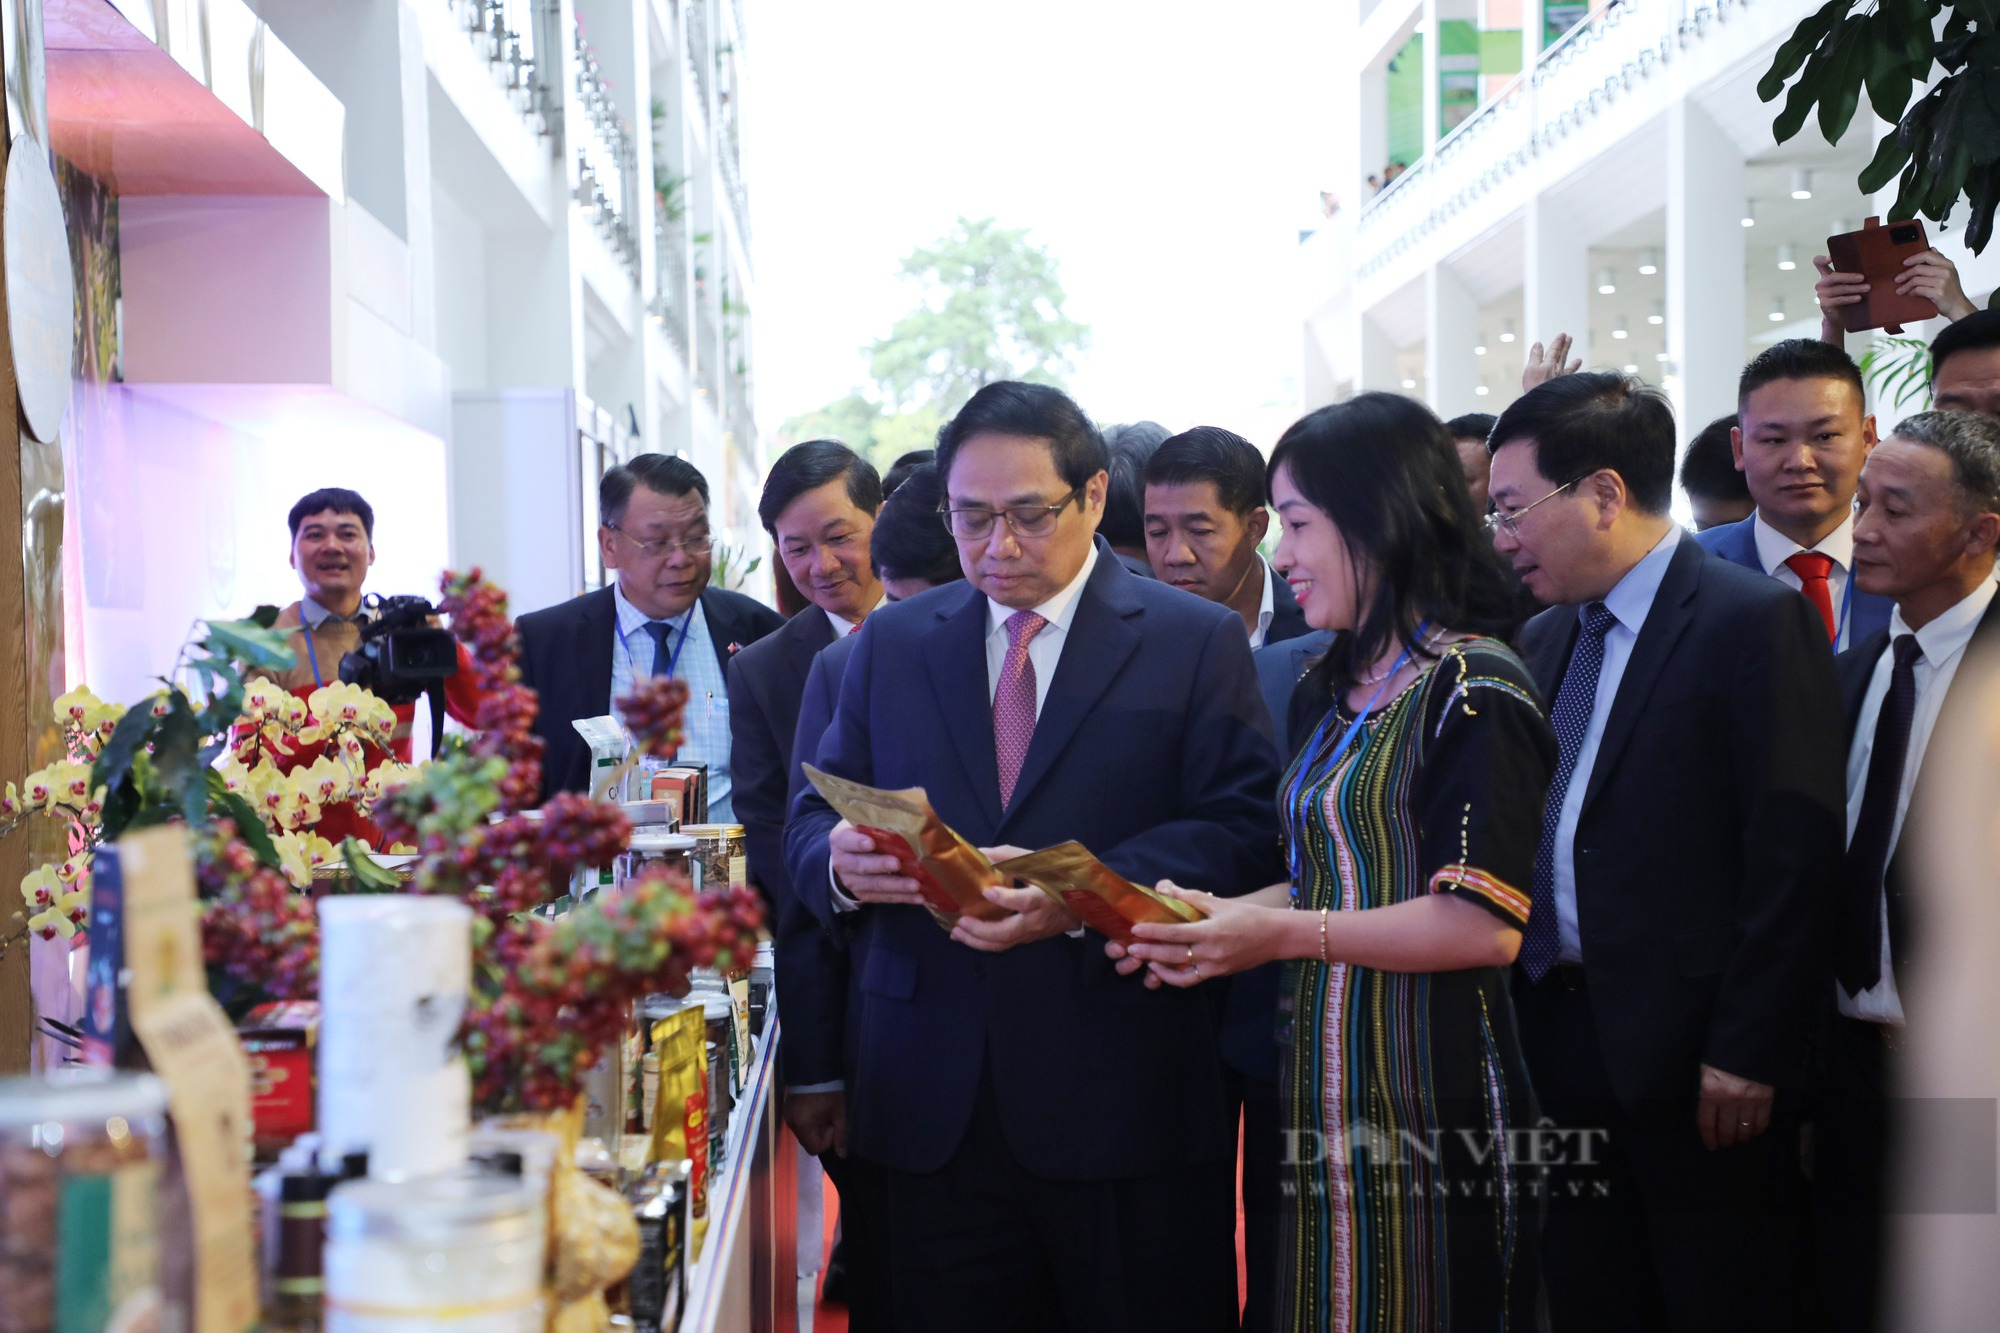 Thủ tướng Chính phủ Phạm Minh Chính cắt băng khai mạc triển lãm ảnh Tây Nguyên xanh hài hòa - bền vững - Ảnh 3.